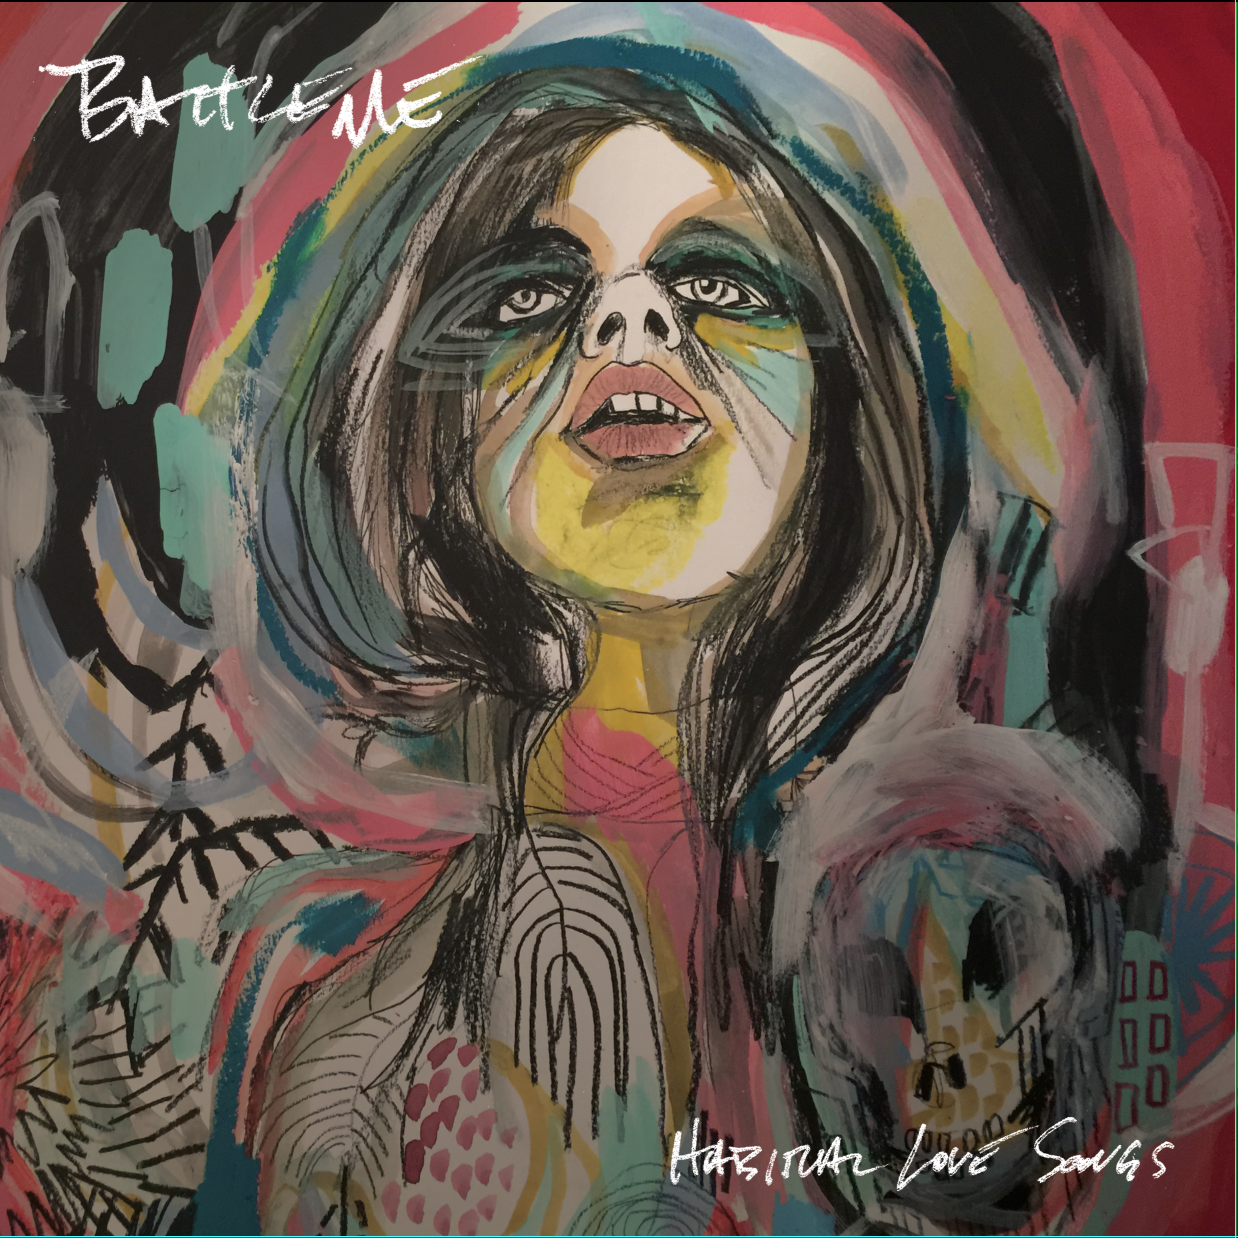 Battleme - Habitual Love Songs